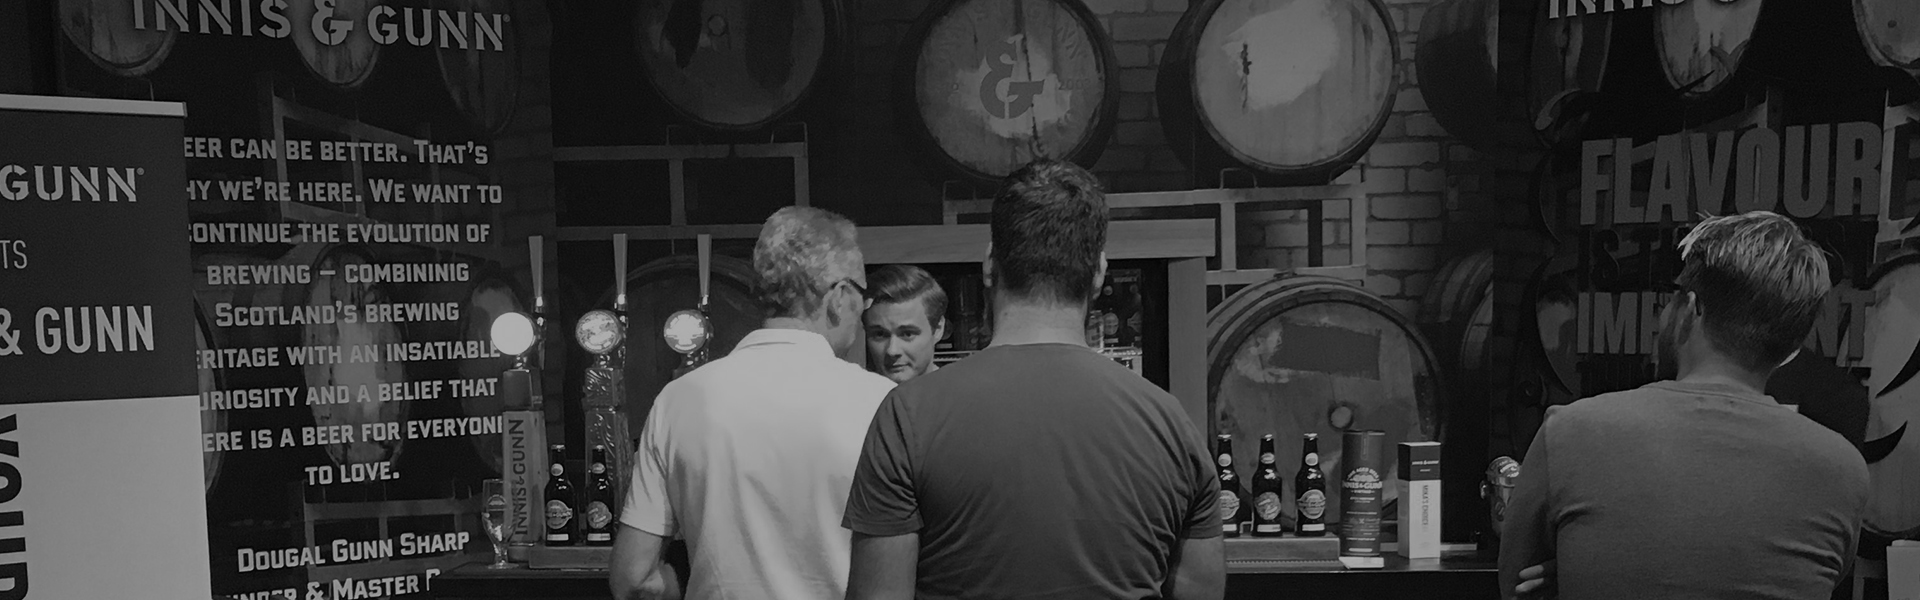 Prova öl med TOMP på En Öl och Whiskymässa i Göteborg